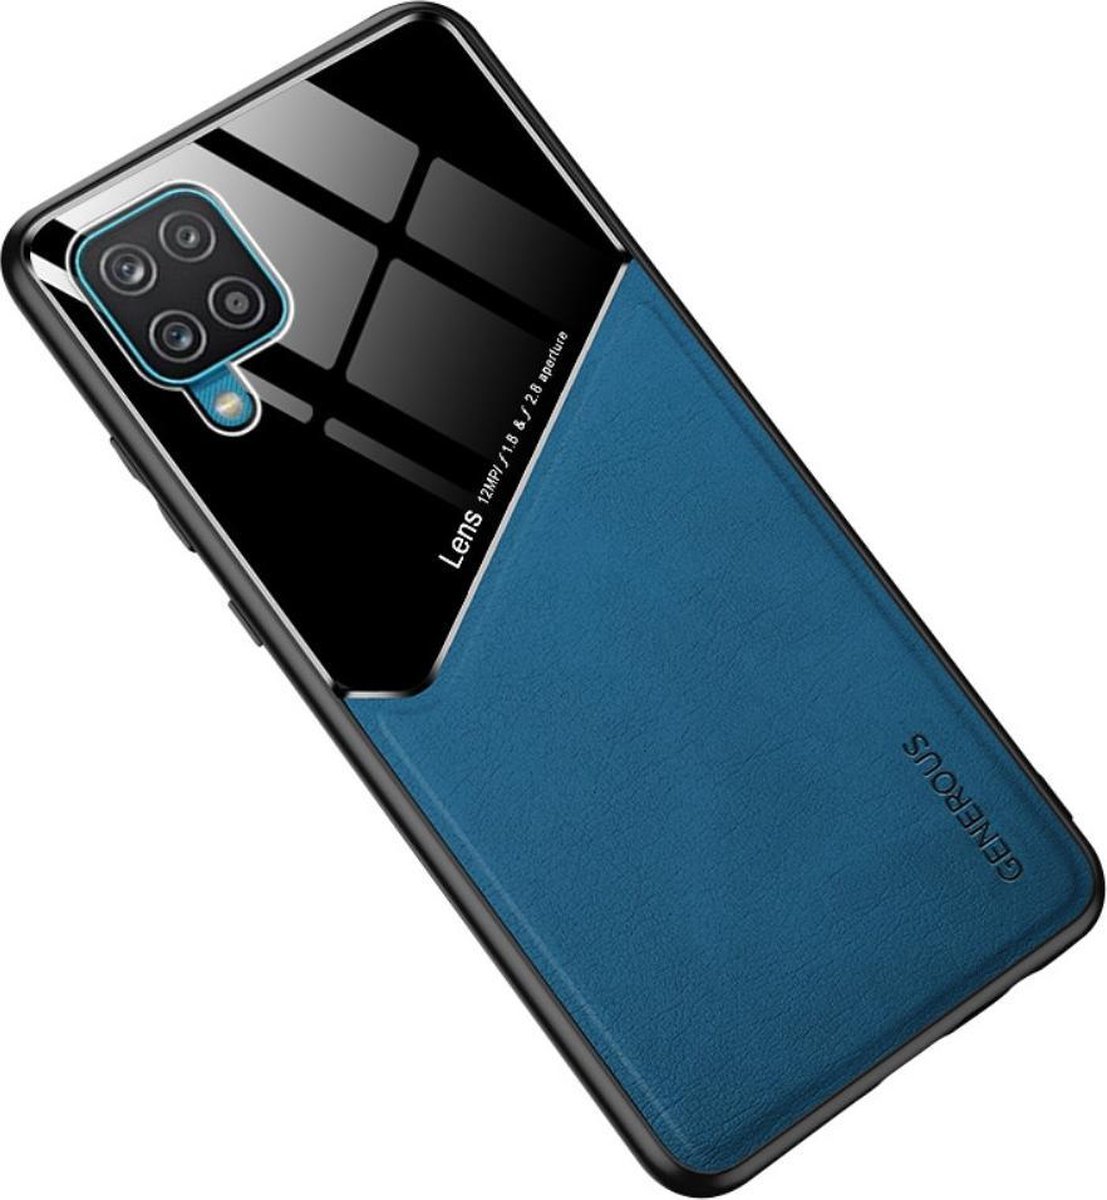 Blauwe hard cover Samsung Galaxy A12 geschikt voor magnetische autohouder